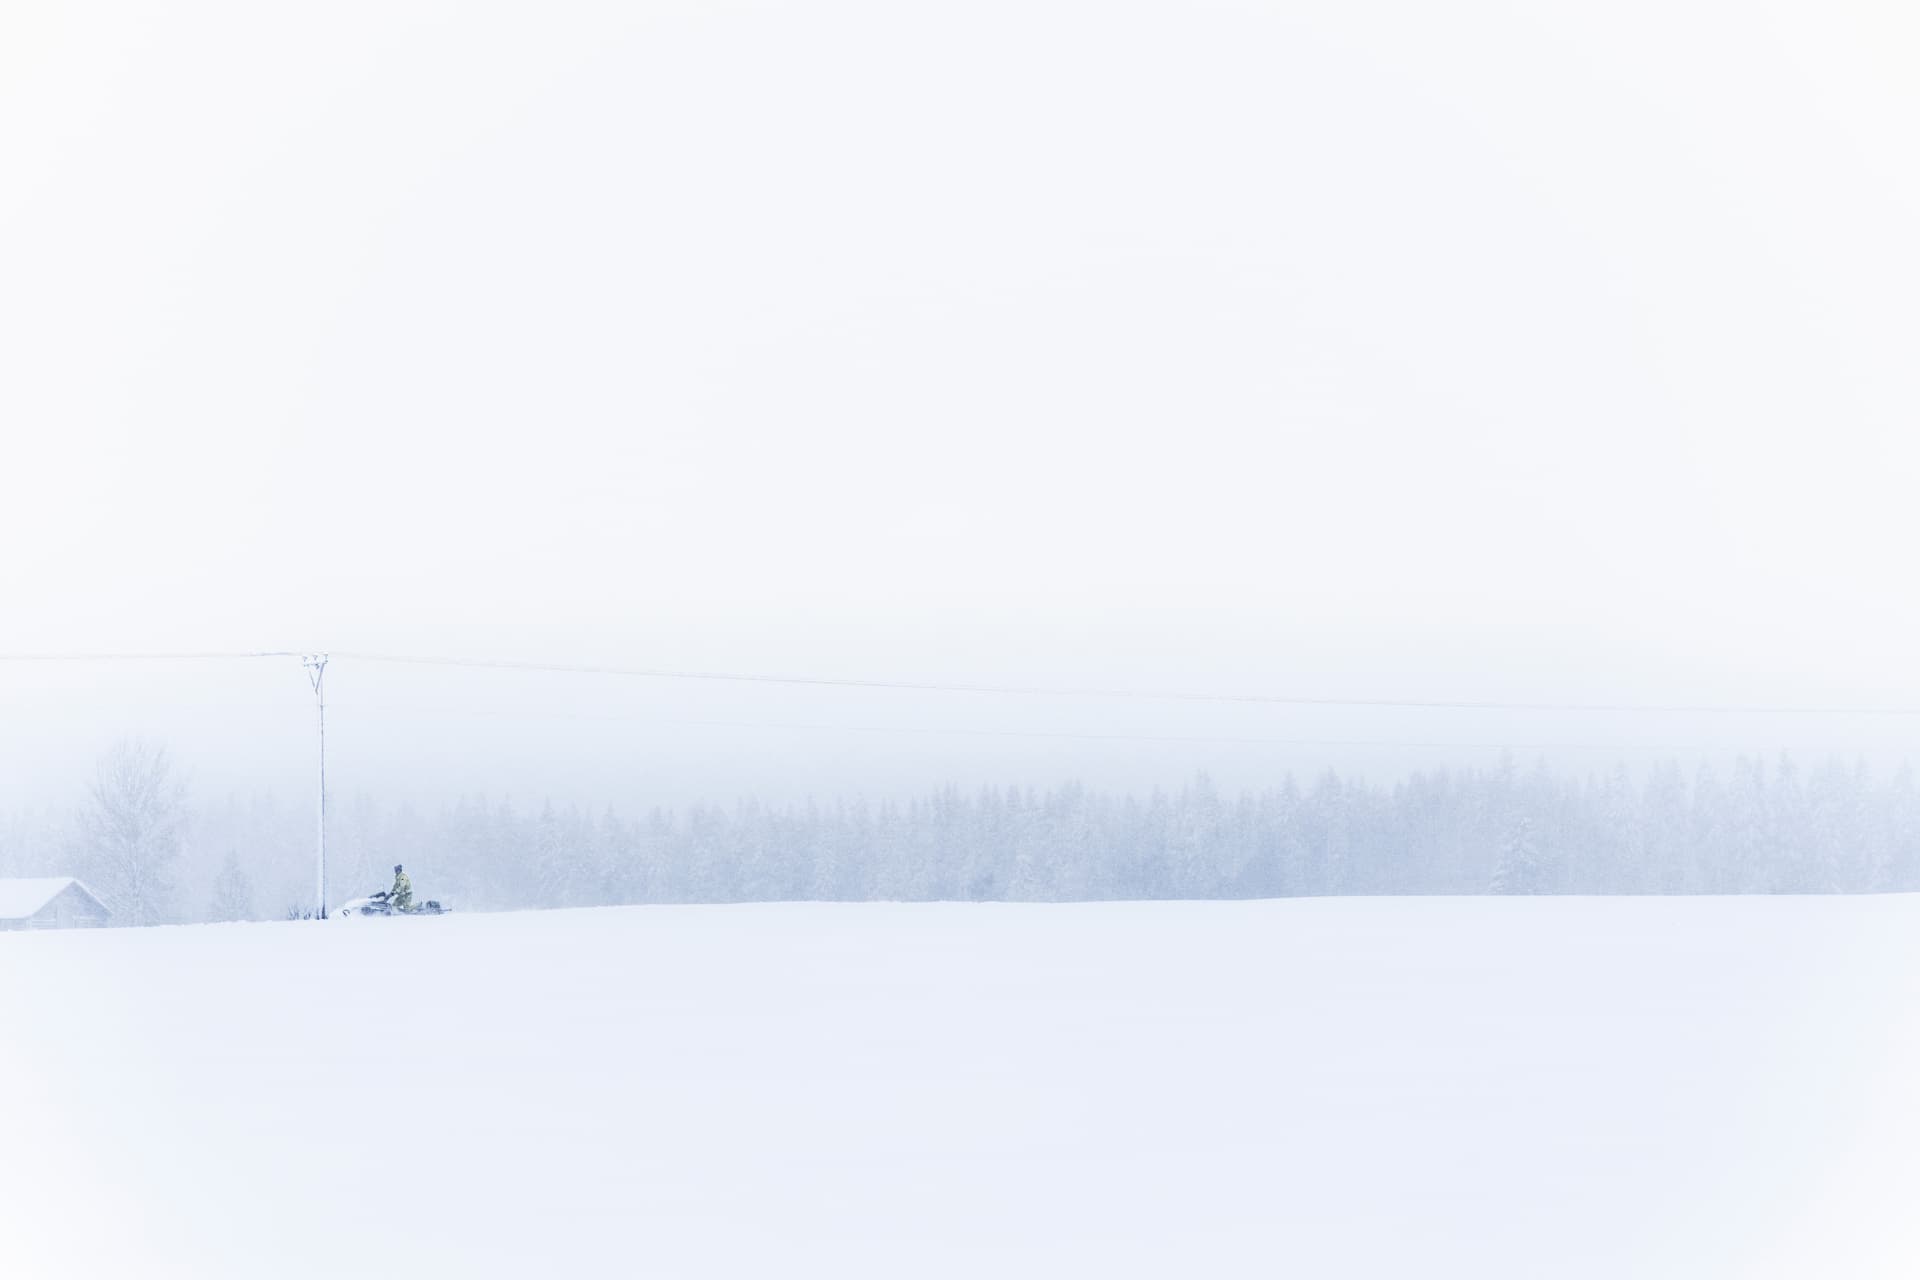 En medarbetare på Jämtkraft kör skoter längs elnätet en snöig vinterdag.